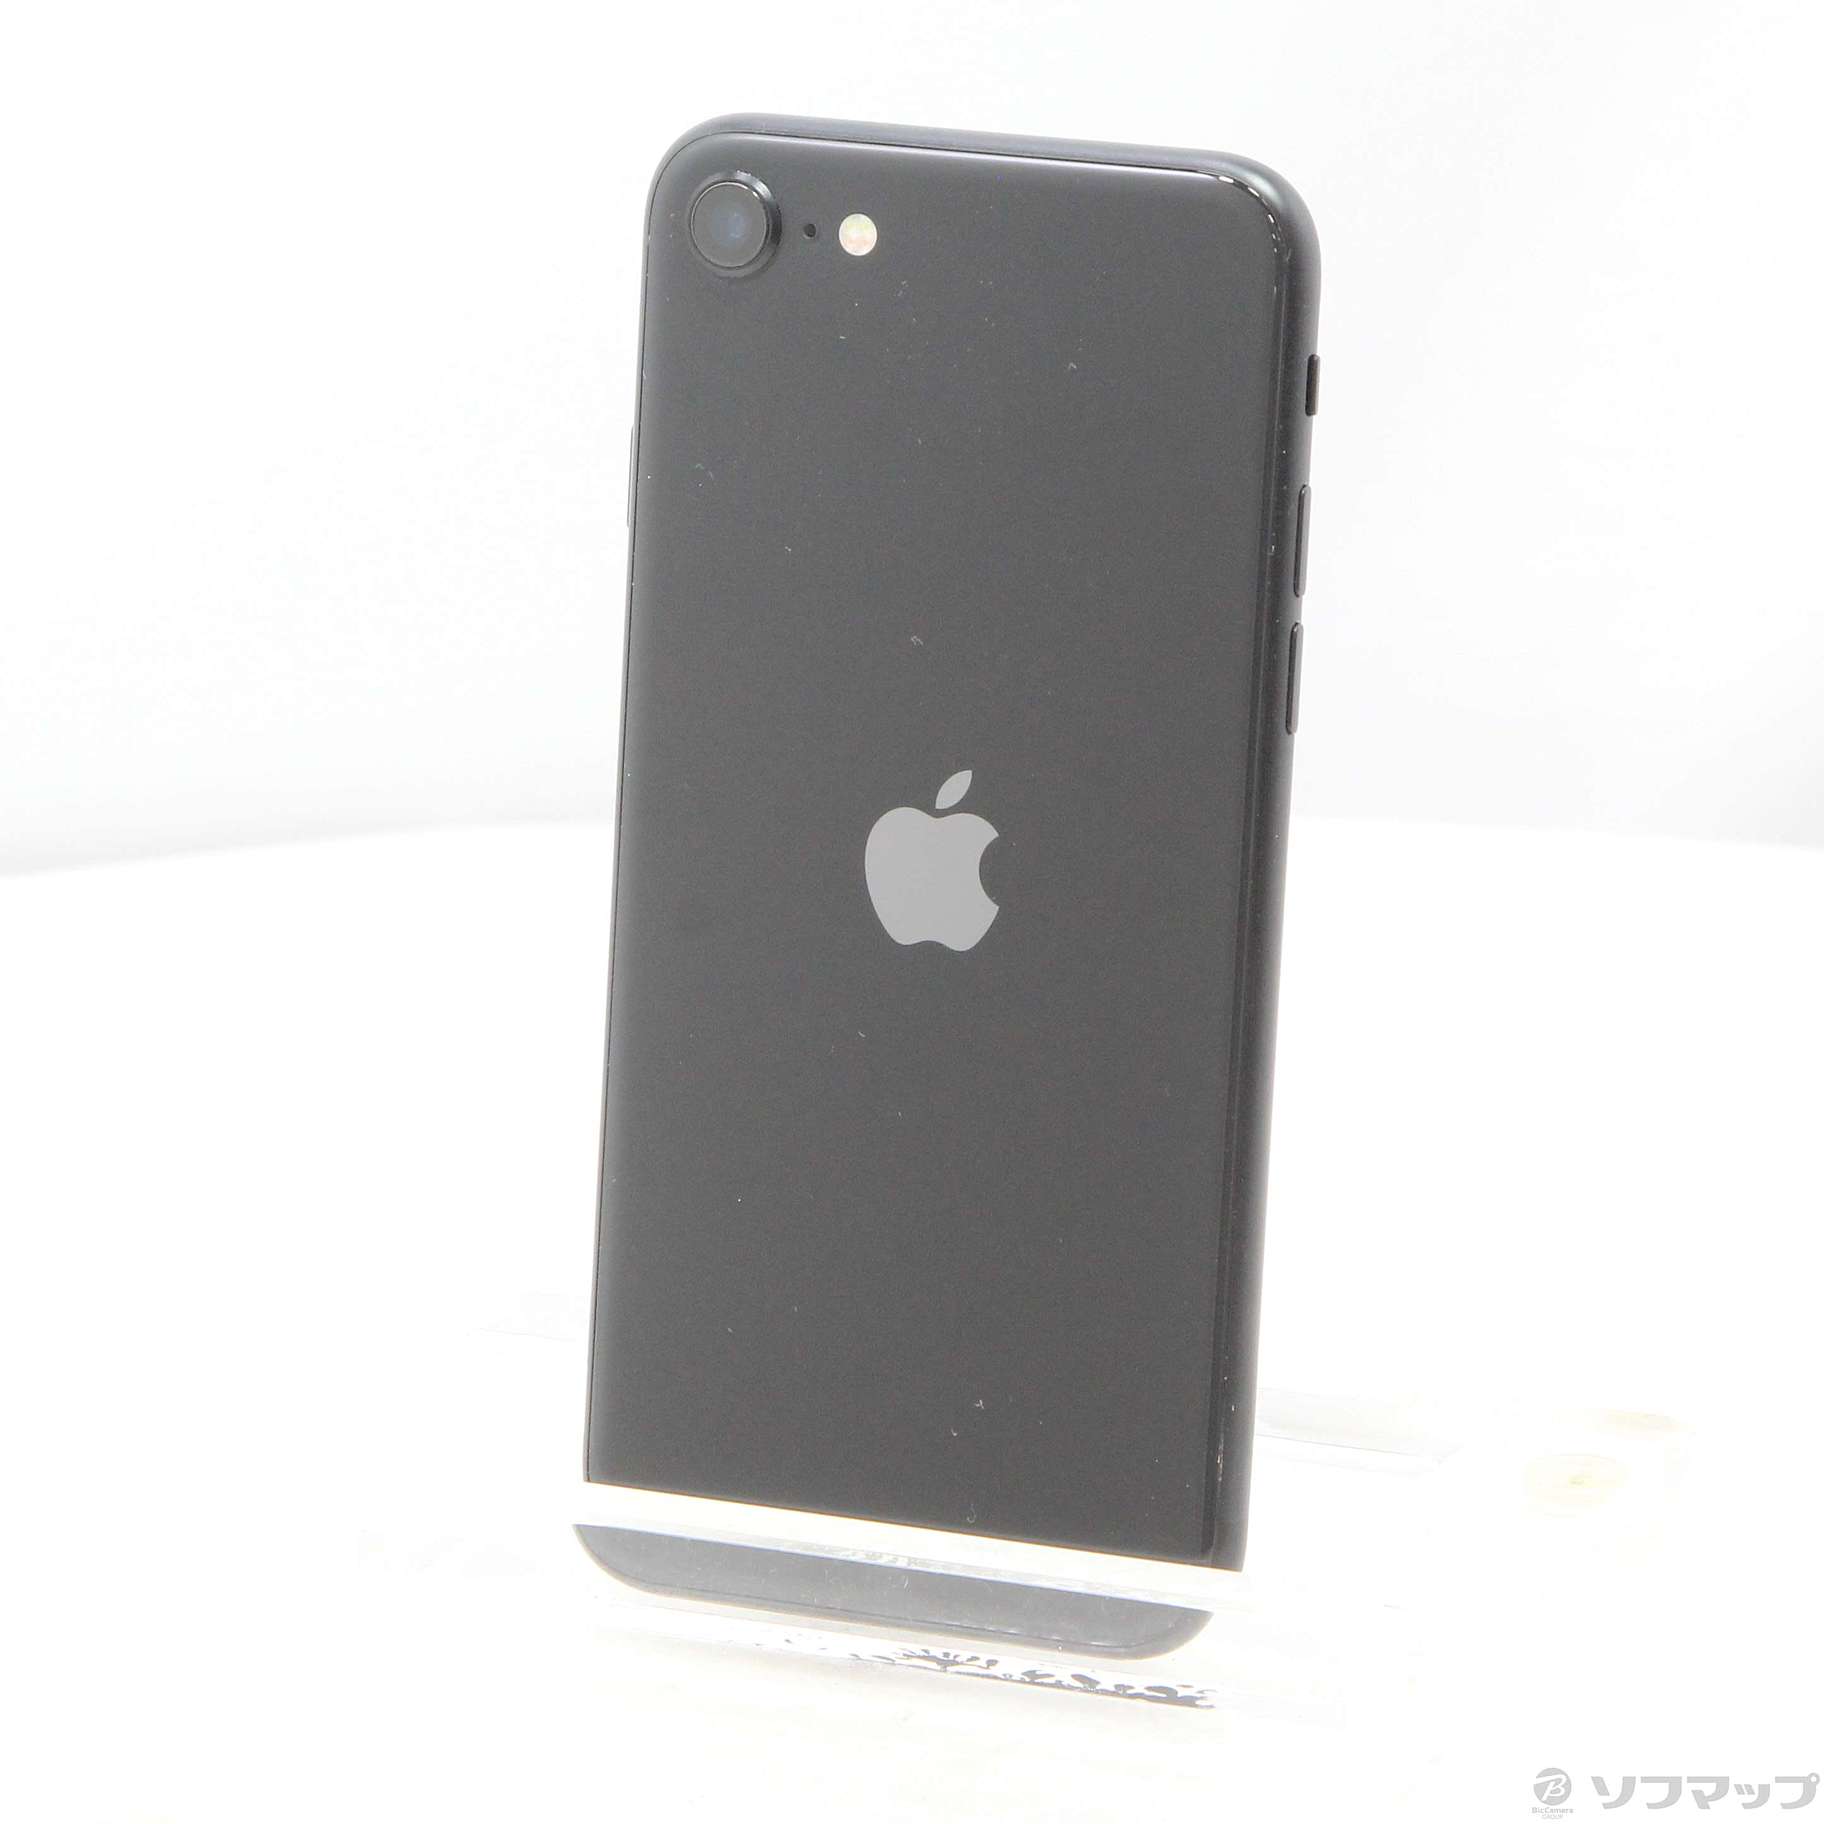 AppleiPhone SE 第2世代 (SE2) ブラック 256GB